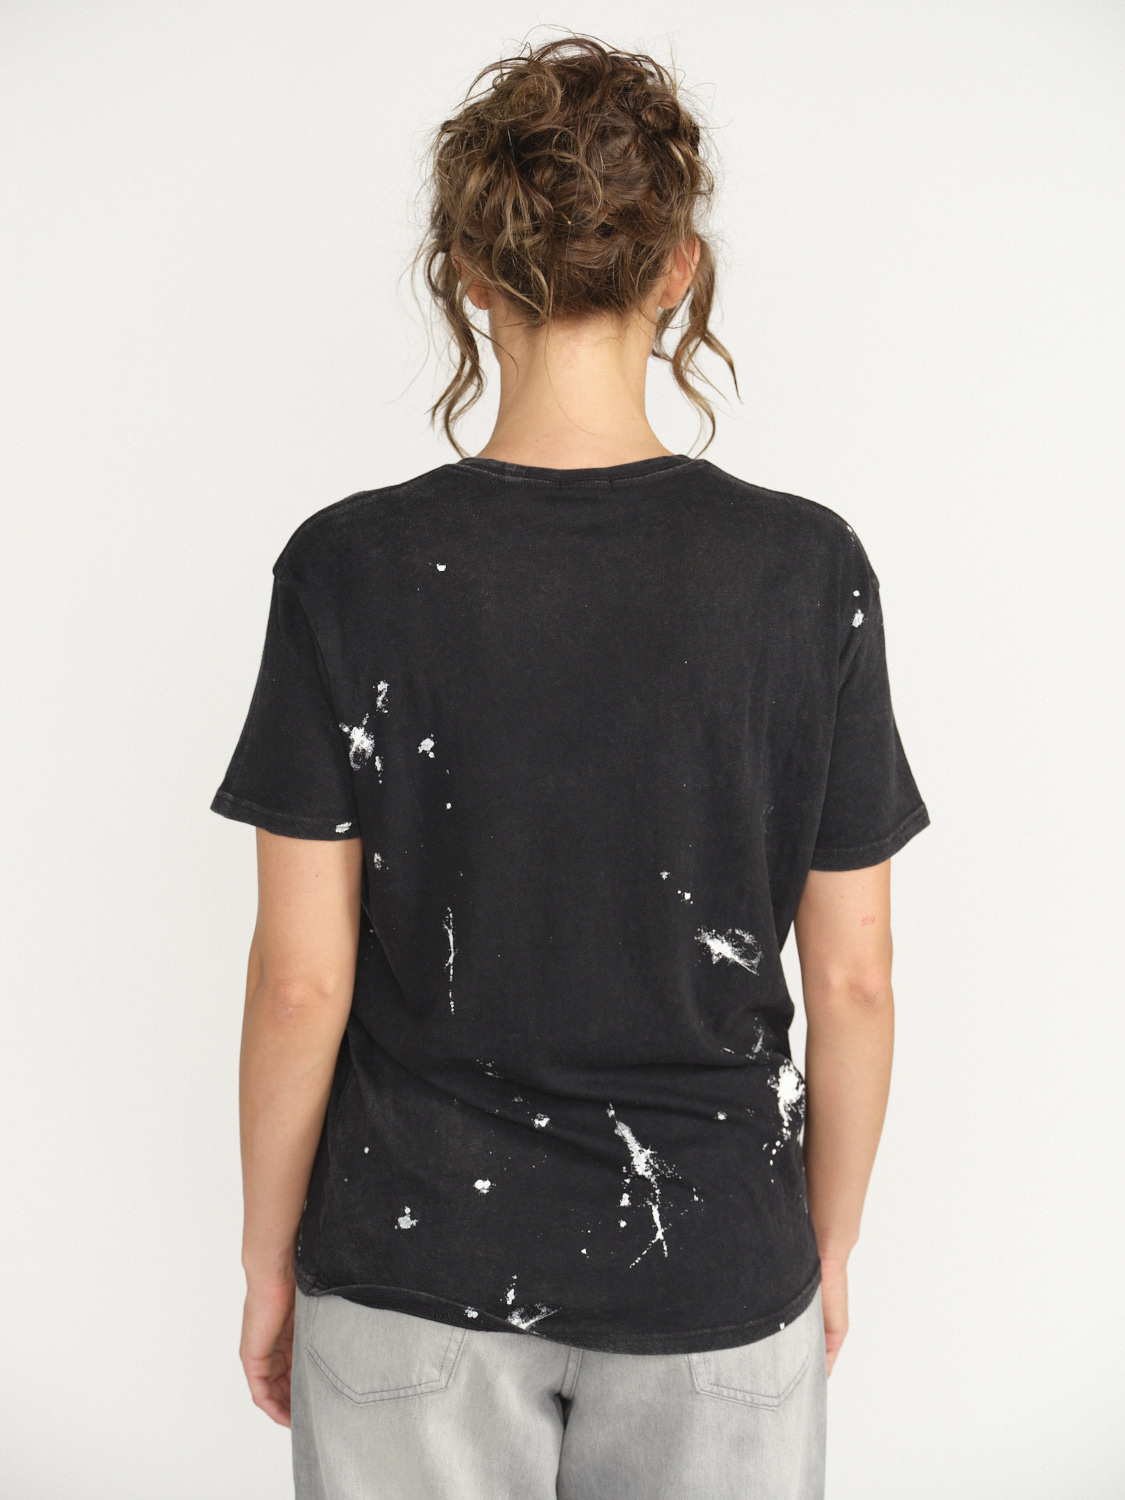 R13 New York Boy T-Shirt - Splatter shirt made of cotton  black XS